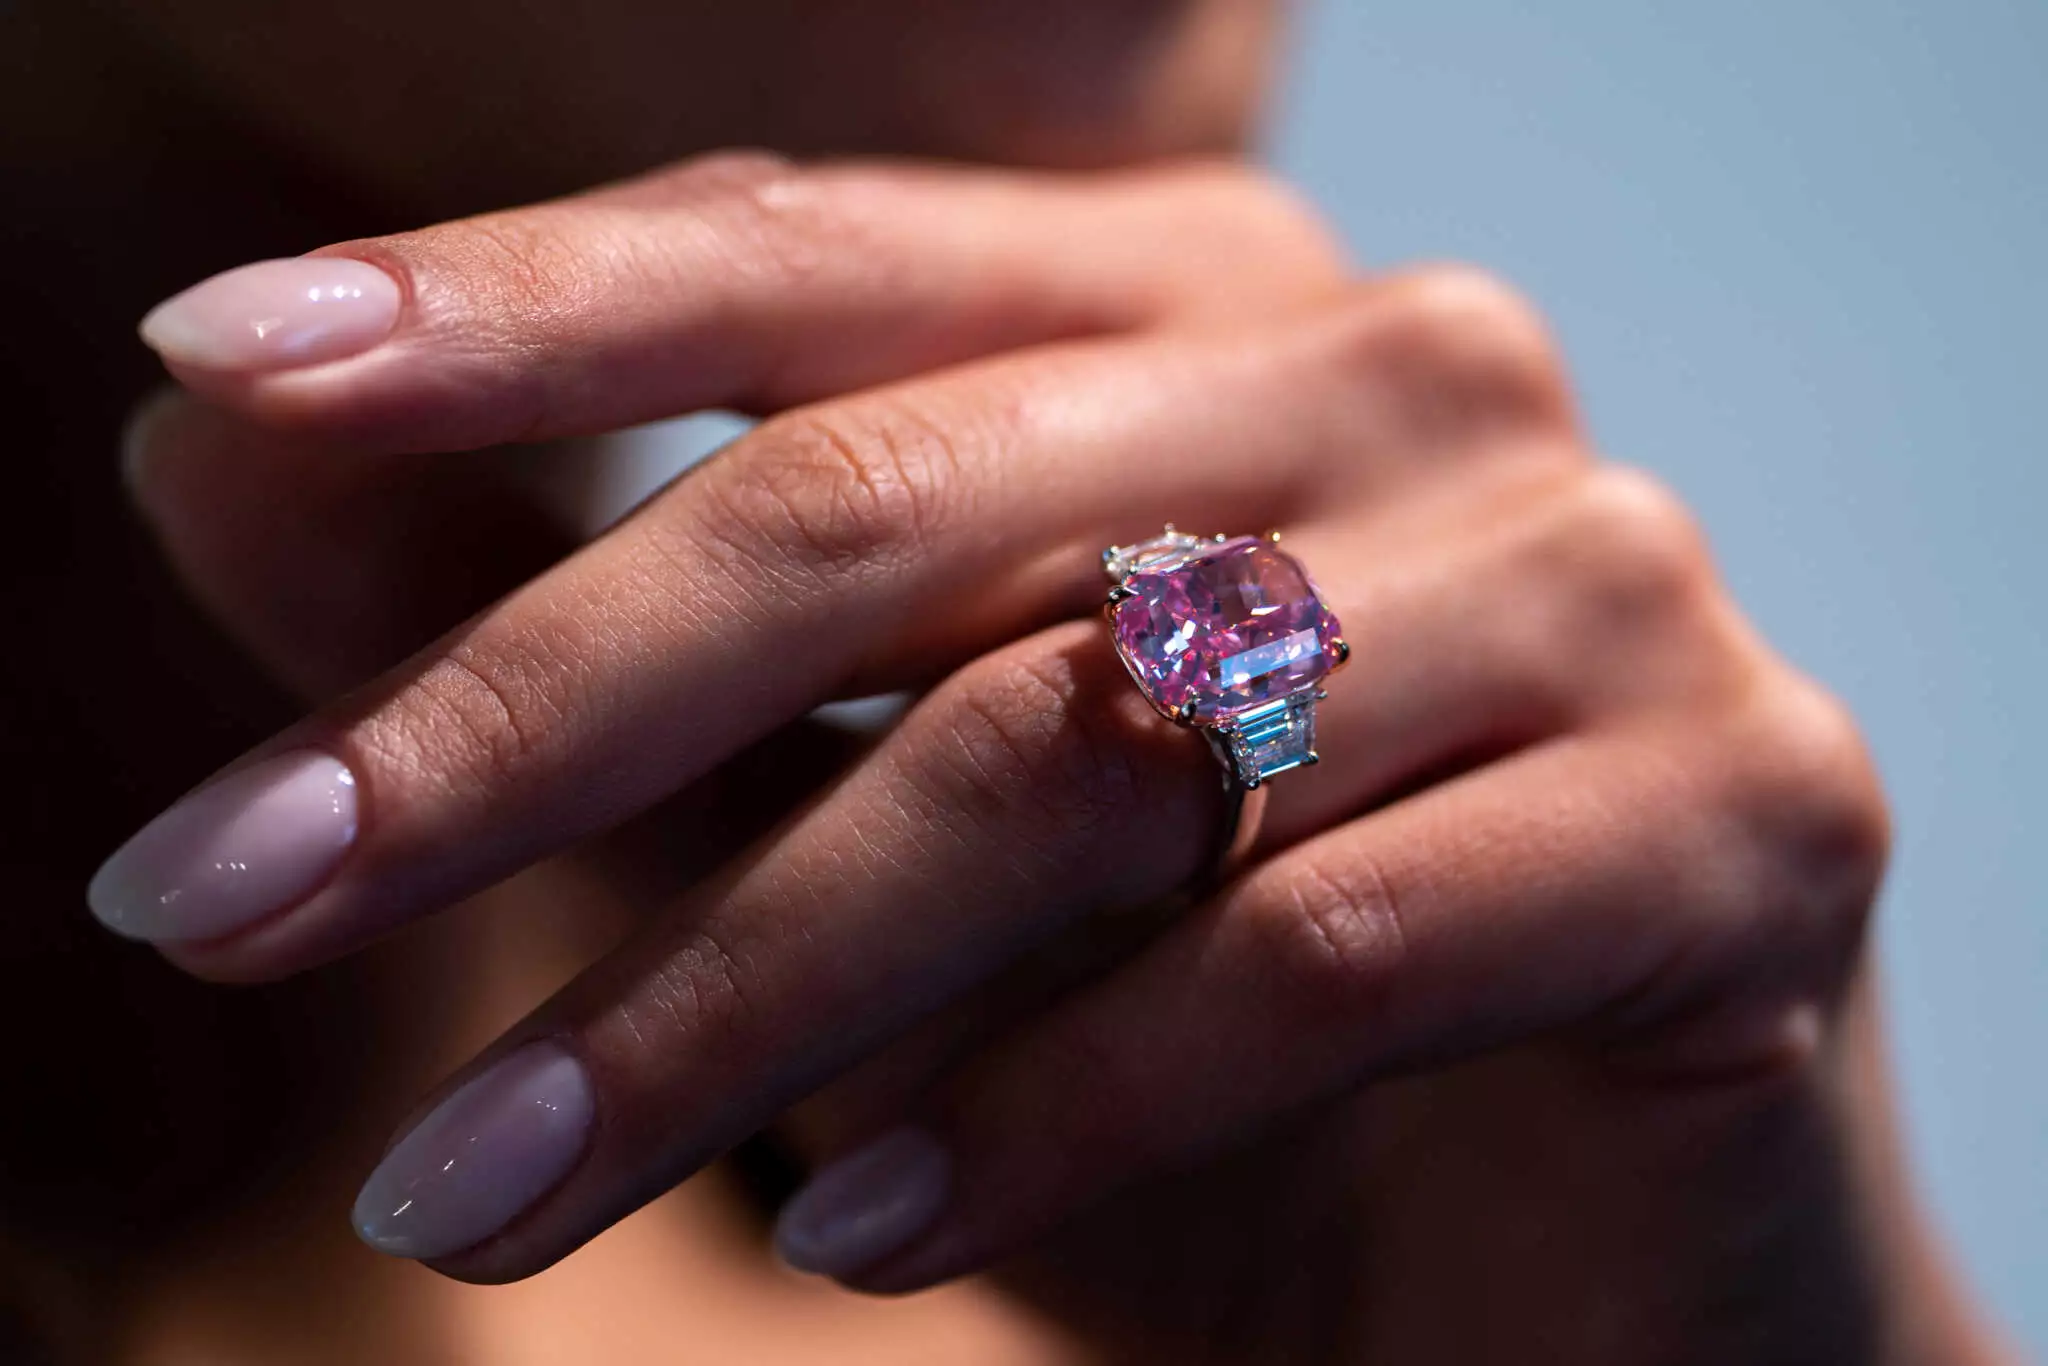 Σε δημοπρασία σπάνιο ροζ διαμάντι στη Νέα Υόρκη – Περίπου 35 εκατ. δολάρια η αξία του